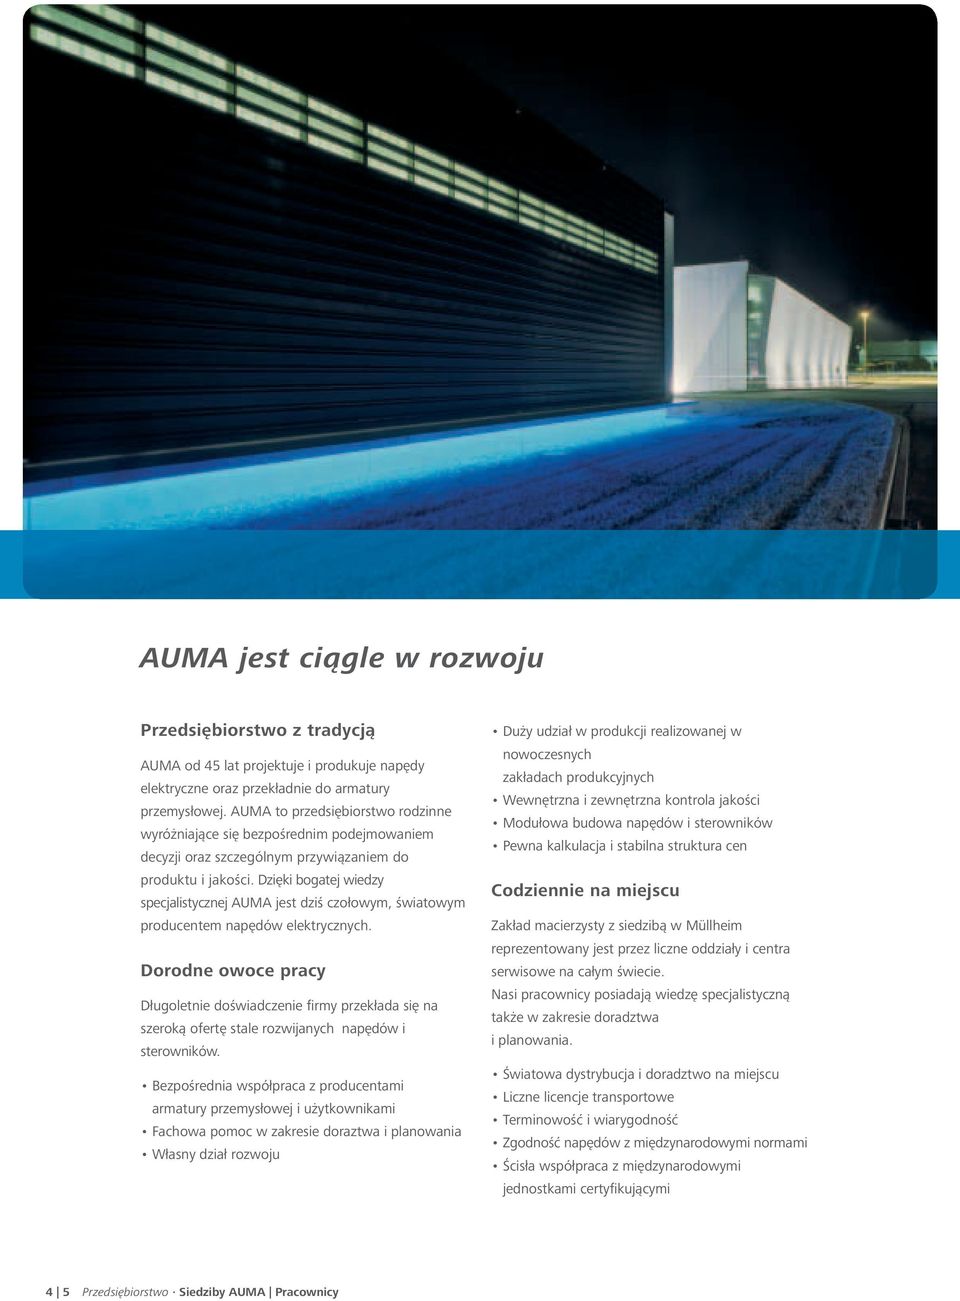 Dzięki bogatej wiedzy specjalistycznej AUMA jest dziś czołowym, światowym producentem napędów elektrycznych.